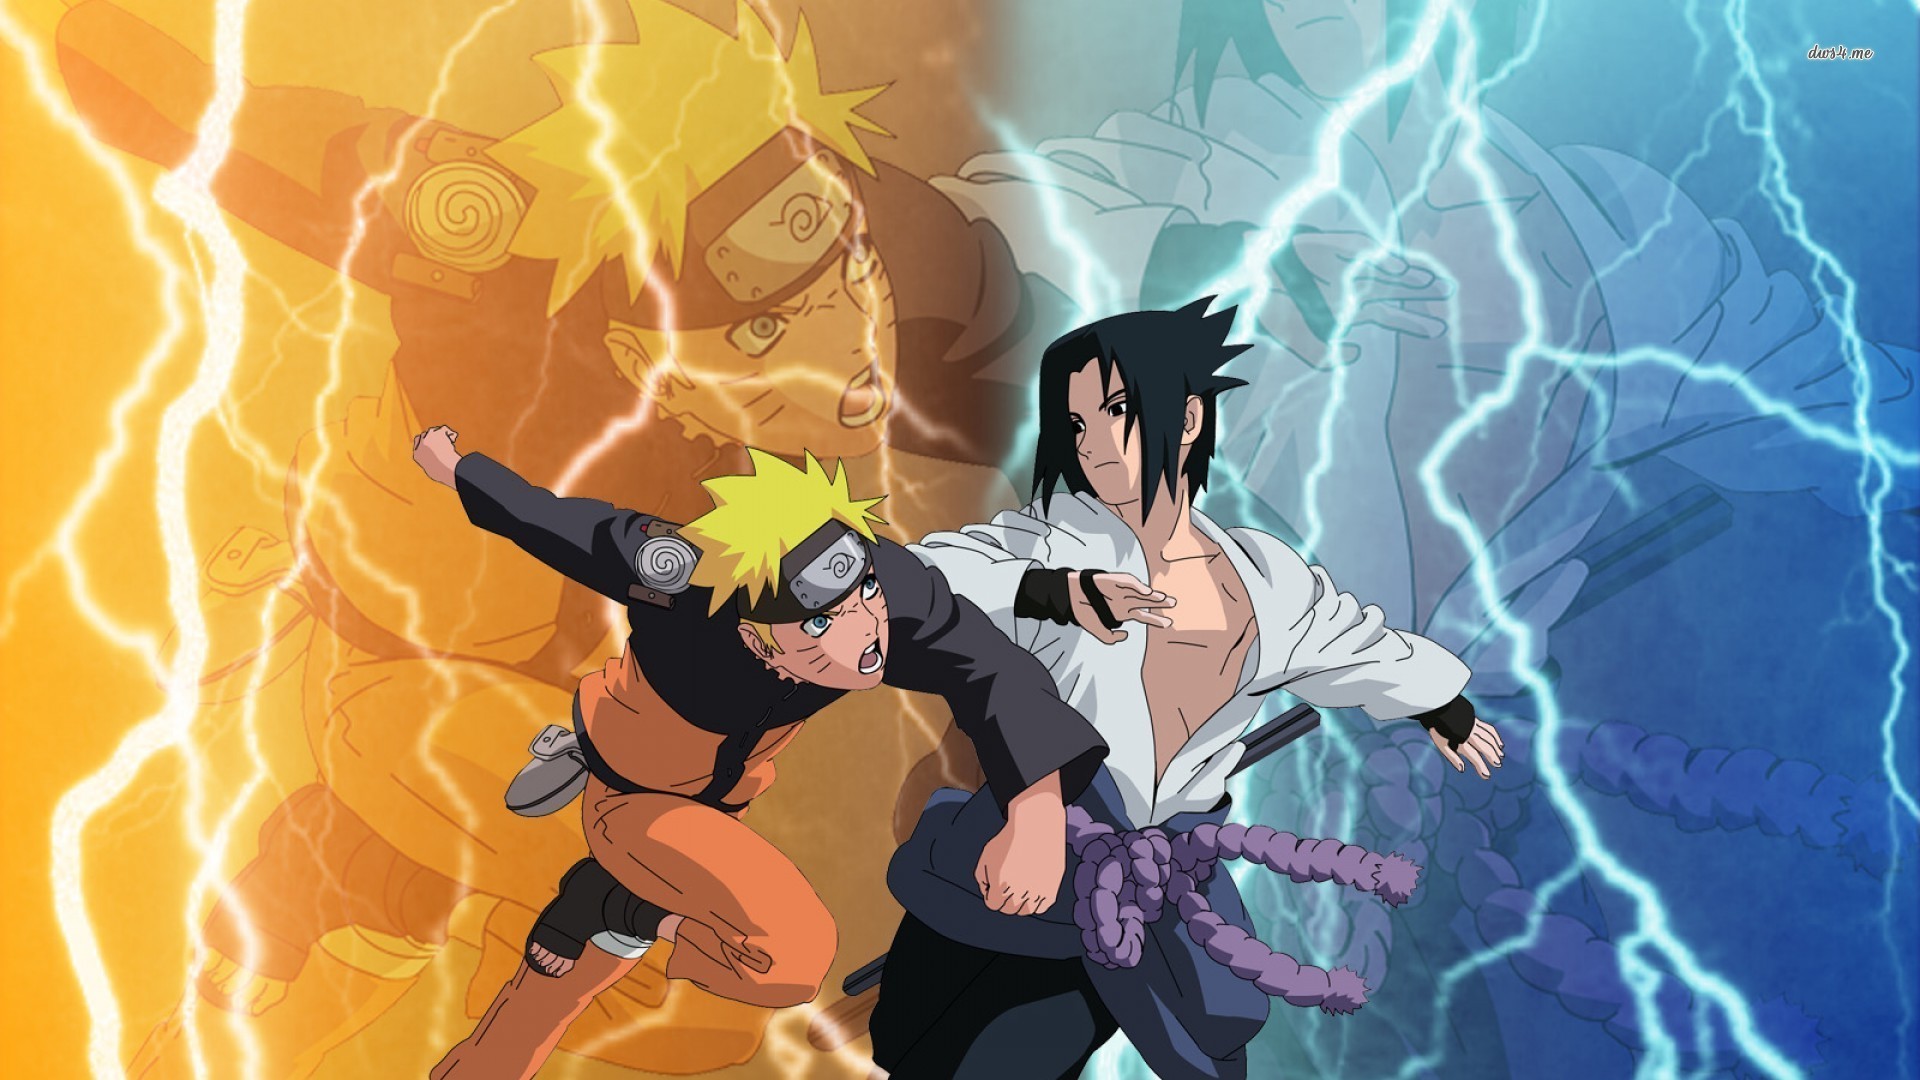 Naruto Uzumaki And Sasuke Uchiha